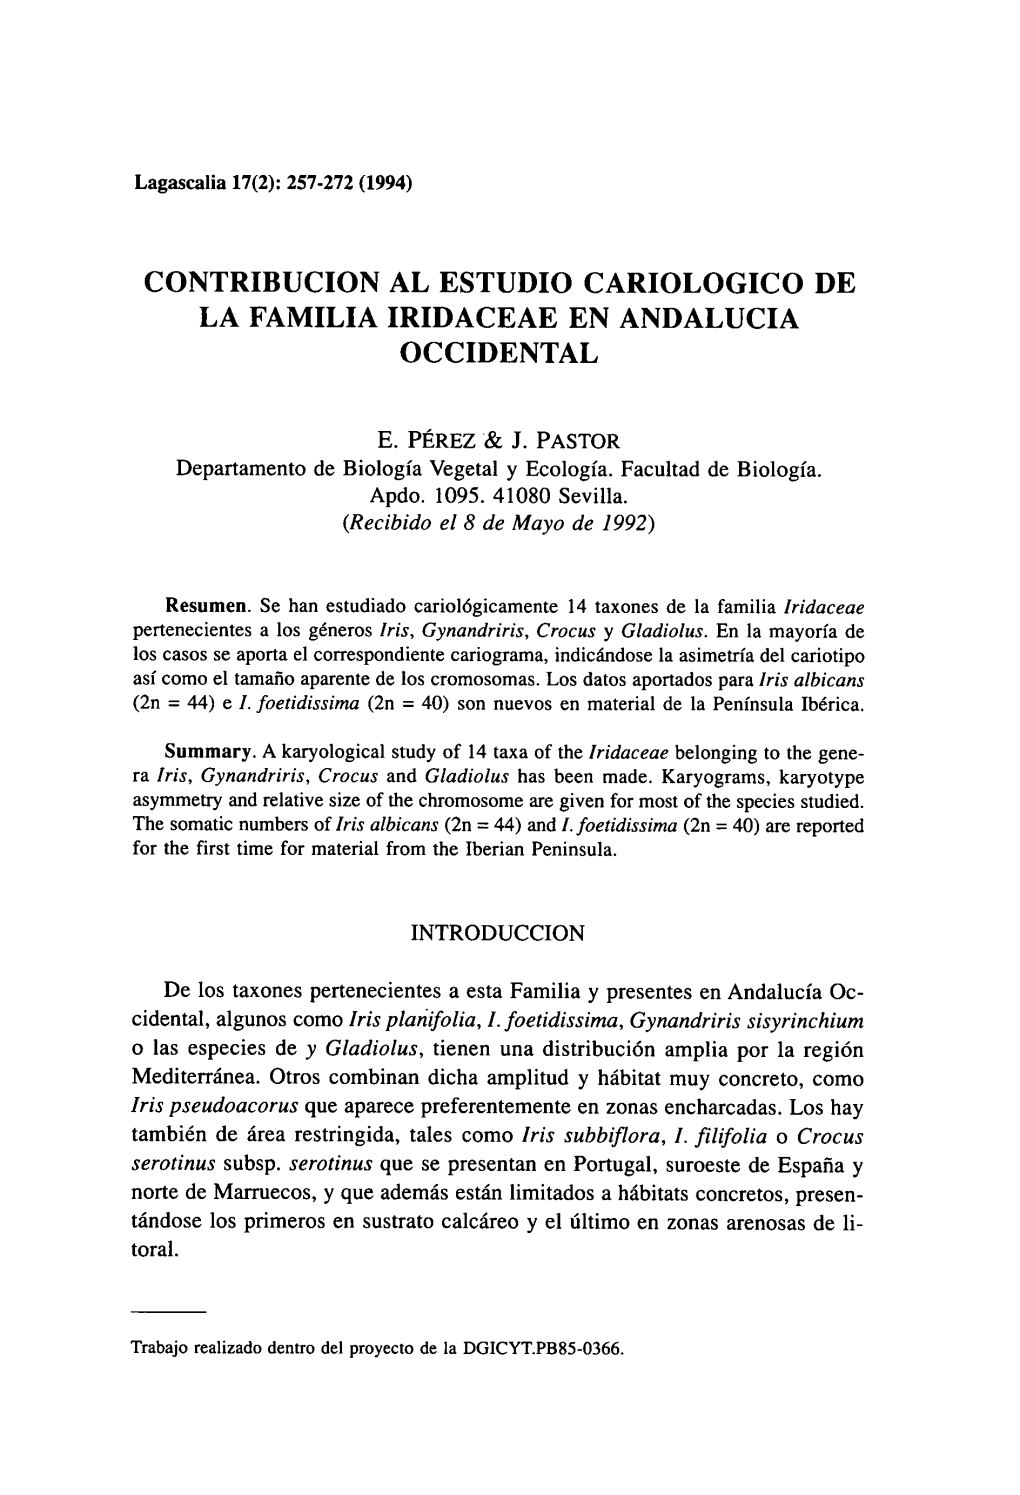 Contribucion Al Estudio Cariologico De La Familia Iridaceae En Andalucia Occidental